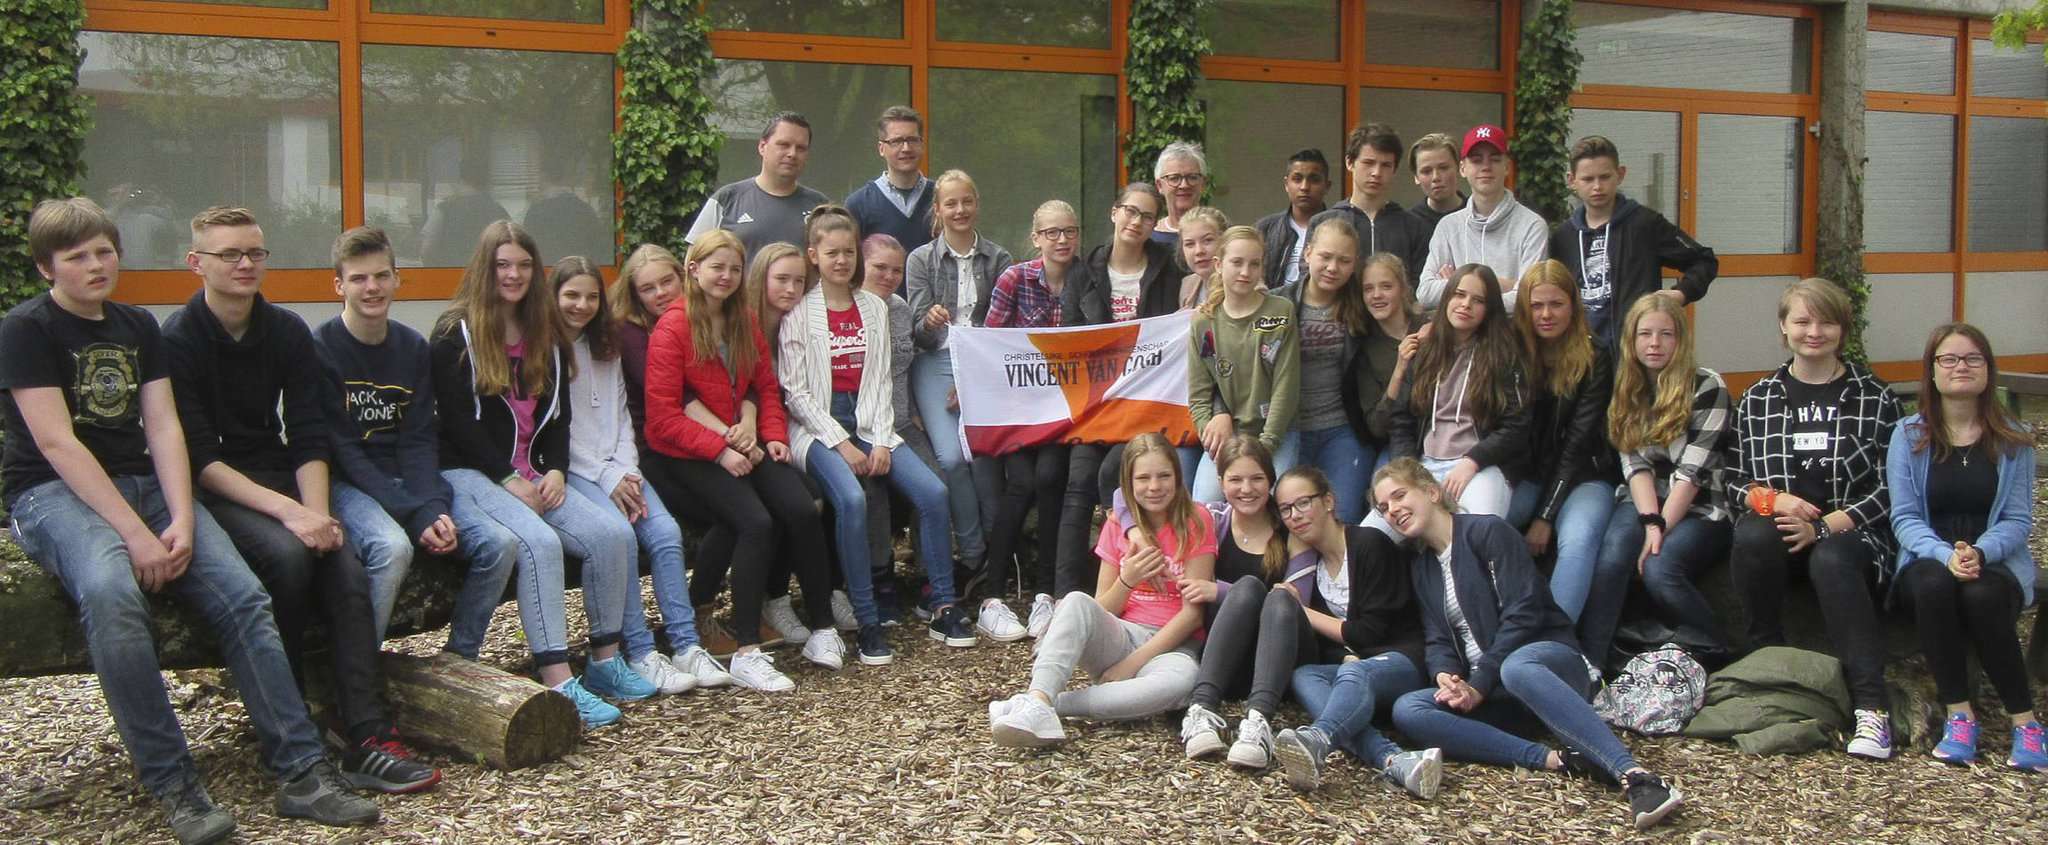 Der Austausch bescherte den Beeke-Schülern und ihren niederländischen Gästen einige unvergessliche Erlebnisse. Nun hoffen die Jugendlichen auf ein baldiges Wiedersehen.